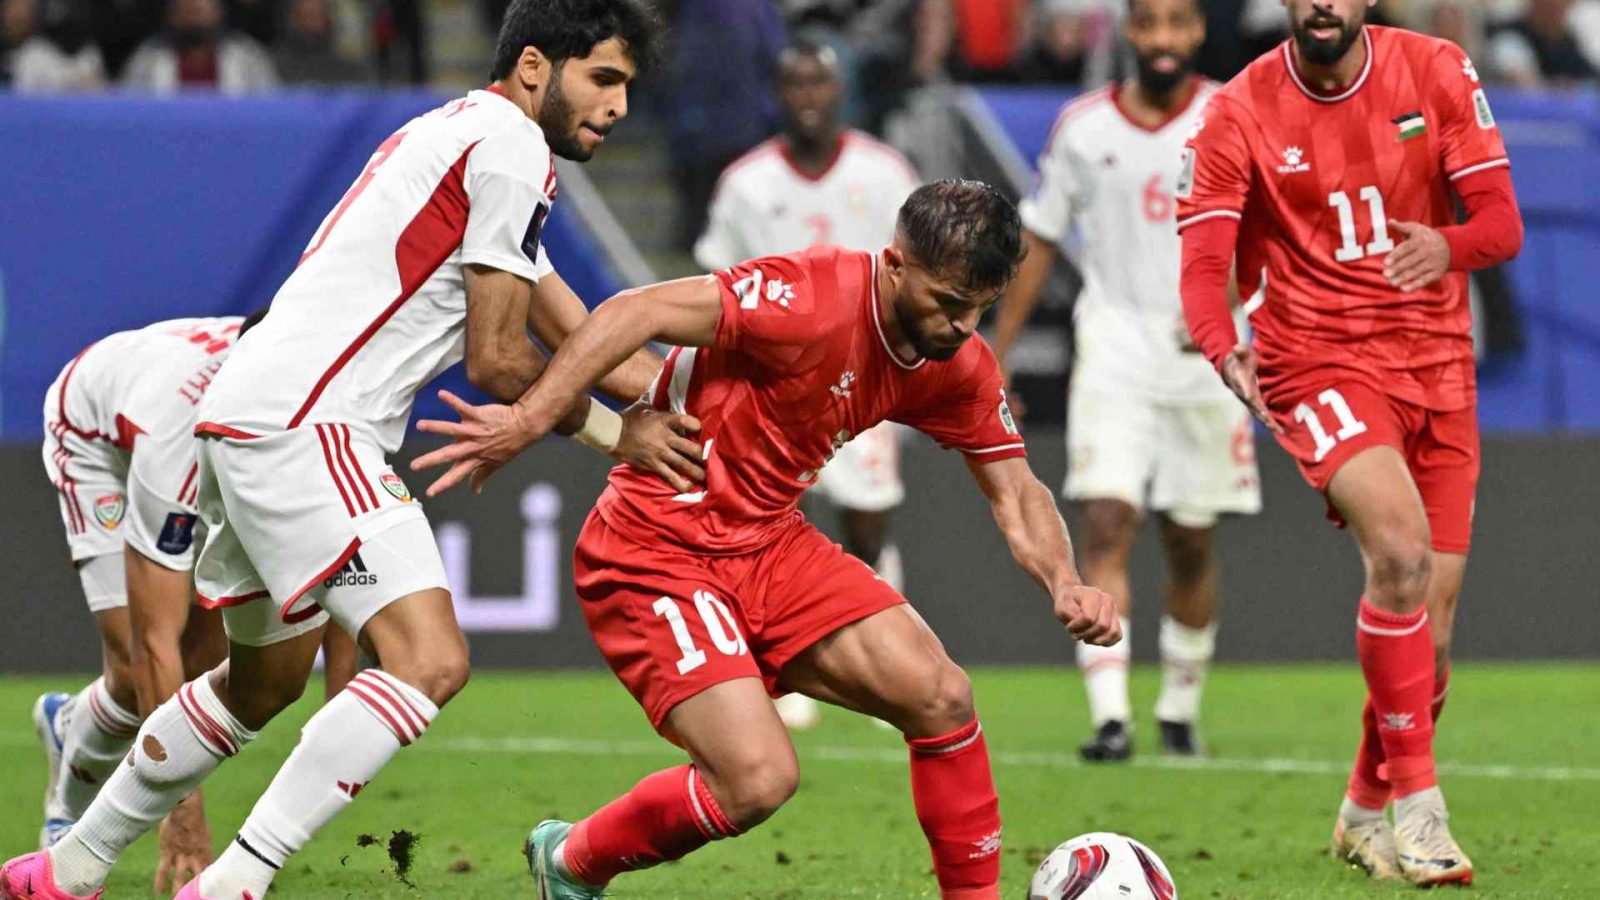 للمرة الأولى في تاريخه/ منتخب فلسطين إلى ثمن نهائي كأس آسيا